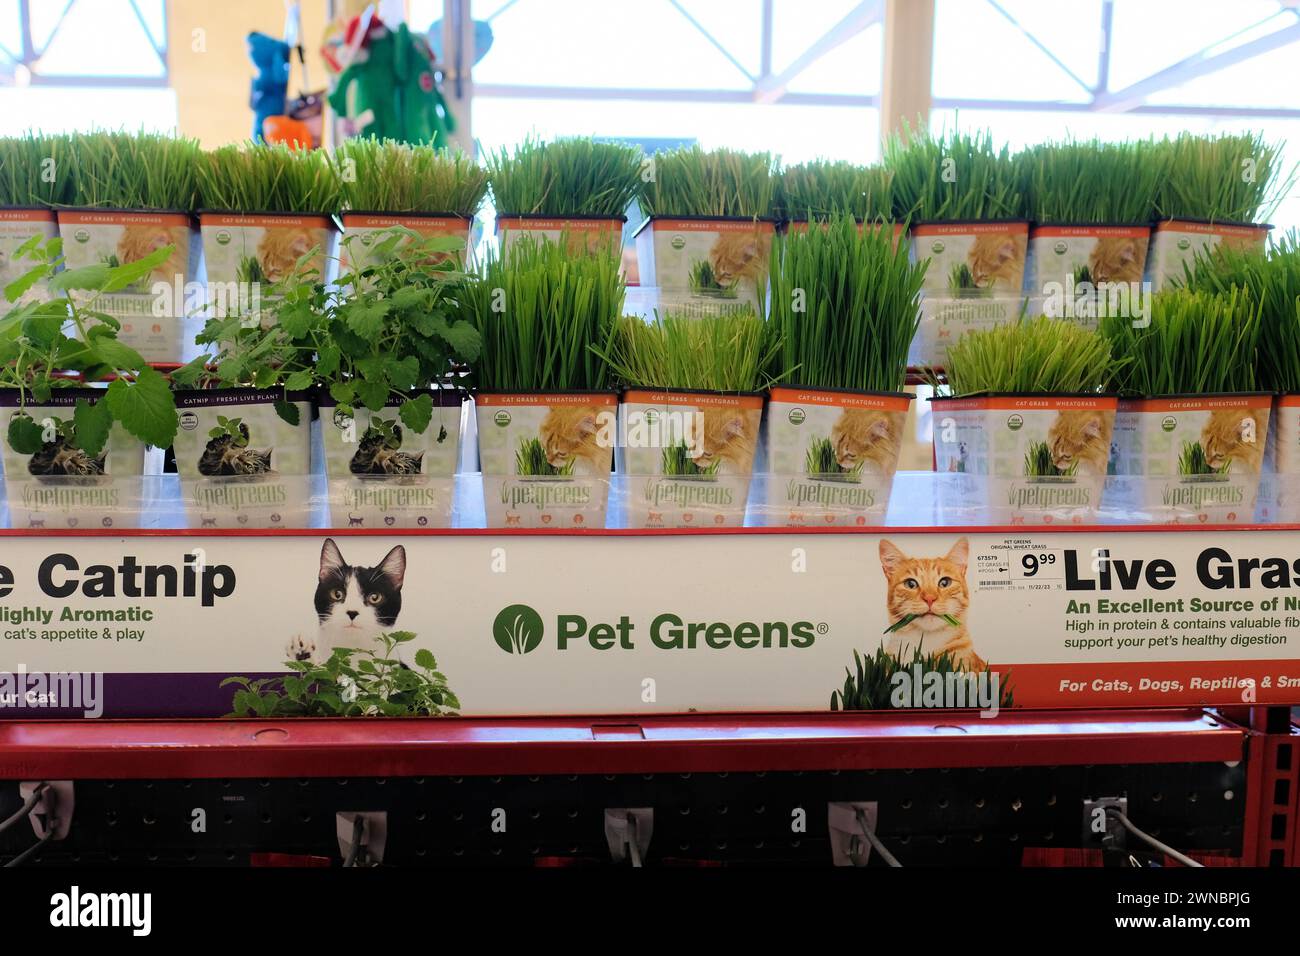 PET Greens è una pianta viva per il benessere dei gatti, nutrizione in un negozio di alimenti per animali: Gatto (Nepeta cataria) e erba graminacea (Triticum aestivum); erba gatta. Foto Stock